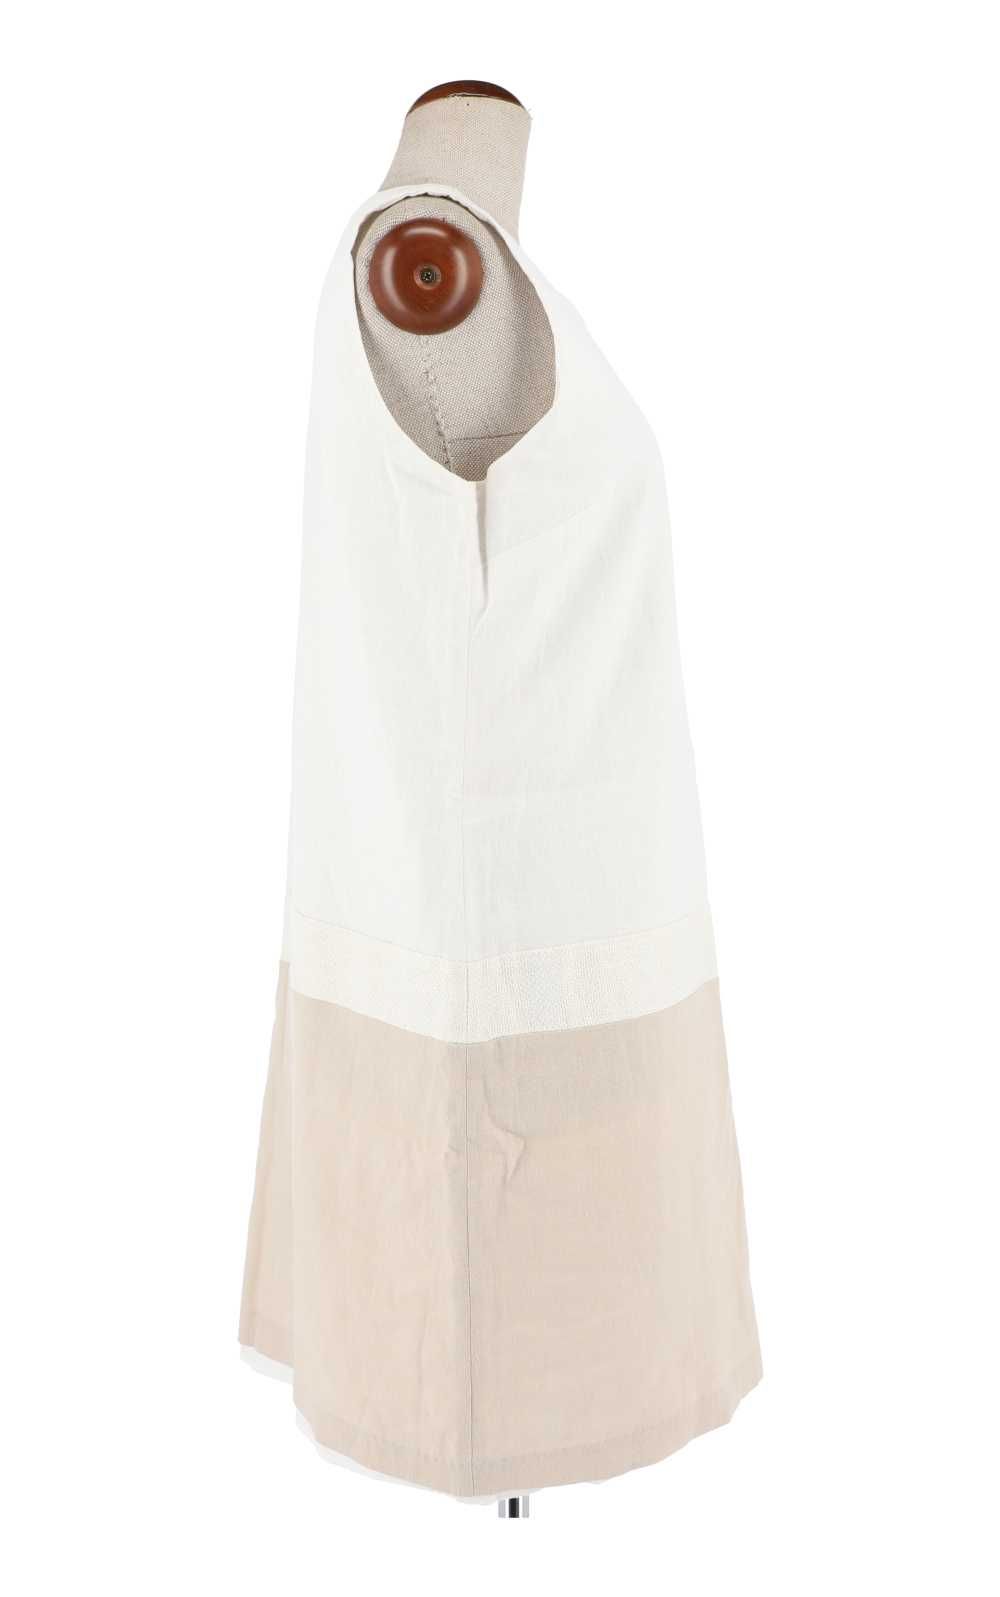 Biała sukienka marki Phildar, rozmiar 46